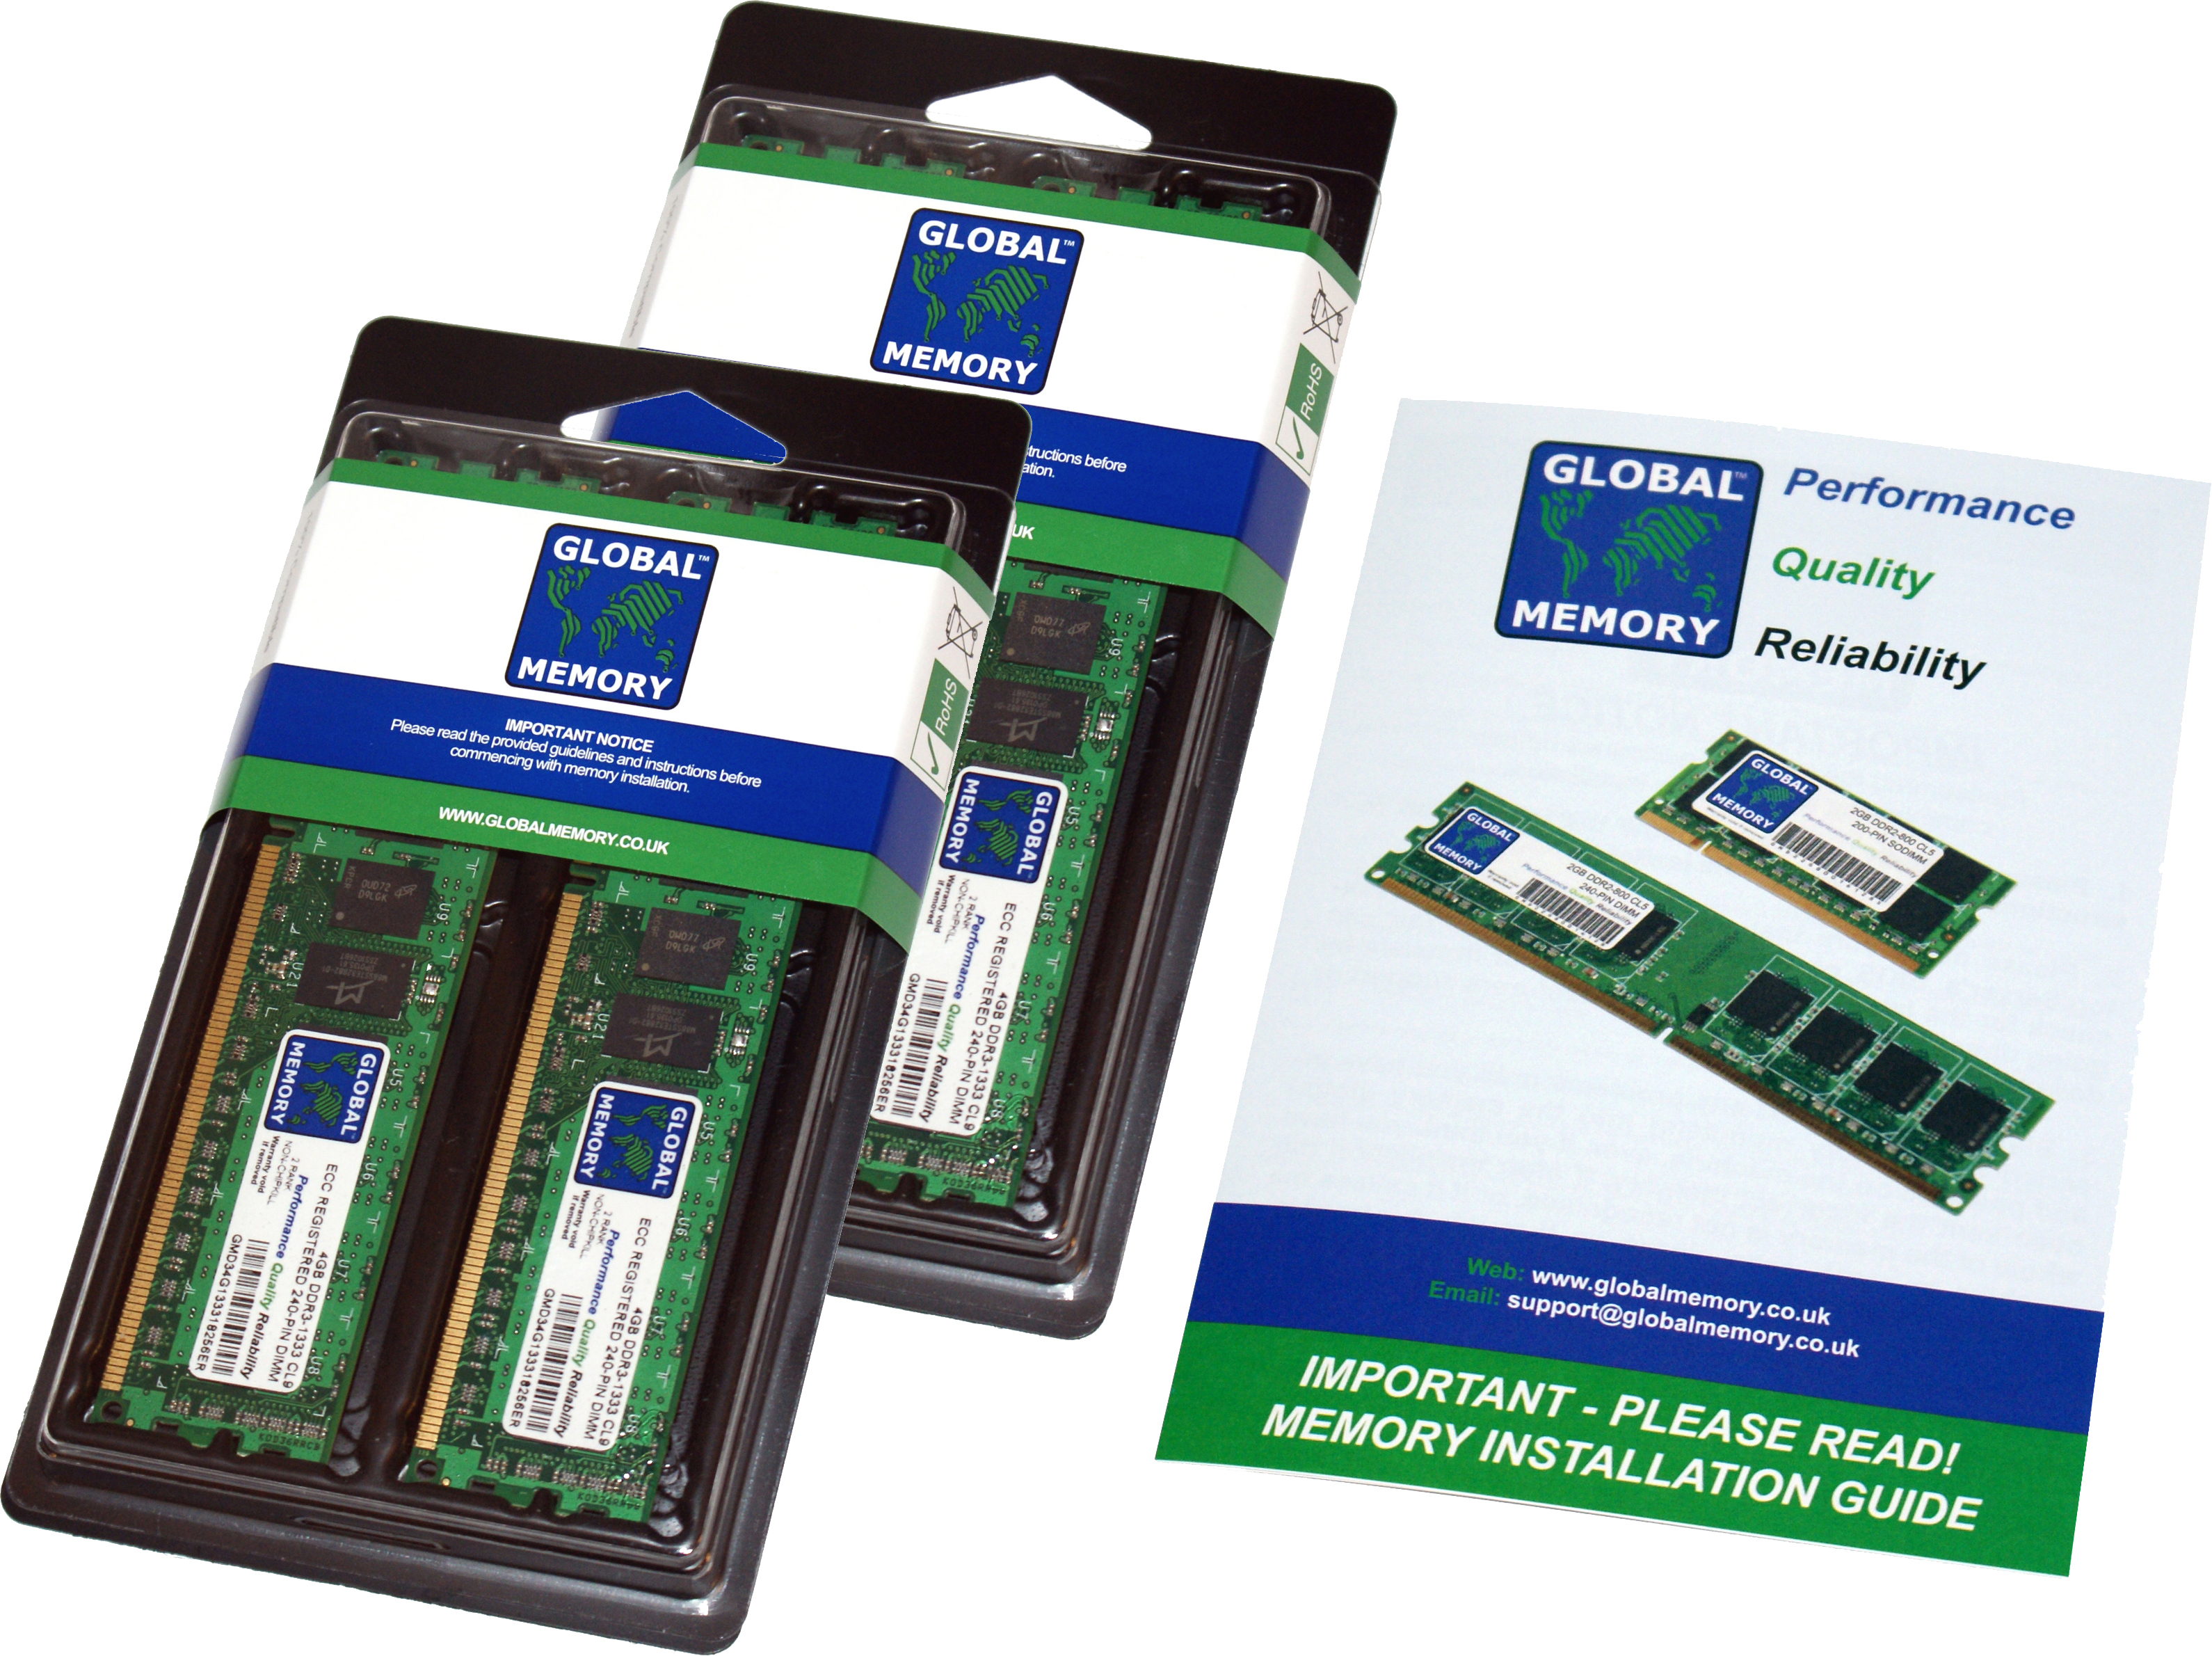 32GB (4 x 8GB) DDR4 2666MHz PC4-21300 288-PIN ECC REGISTERED DIMM (RDIMM) MEMORY RAM KIT FOR HEWLETT-PACKARD SERVERS/WORKSTATIONS (4 RANK KIT CHIPKILL)